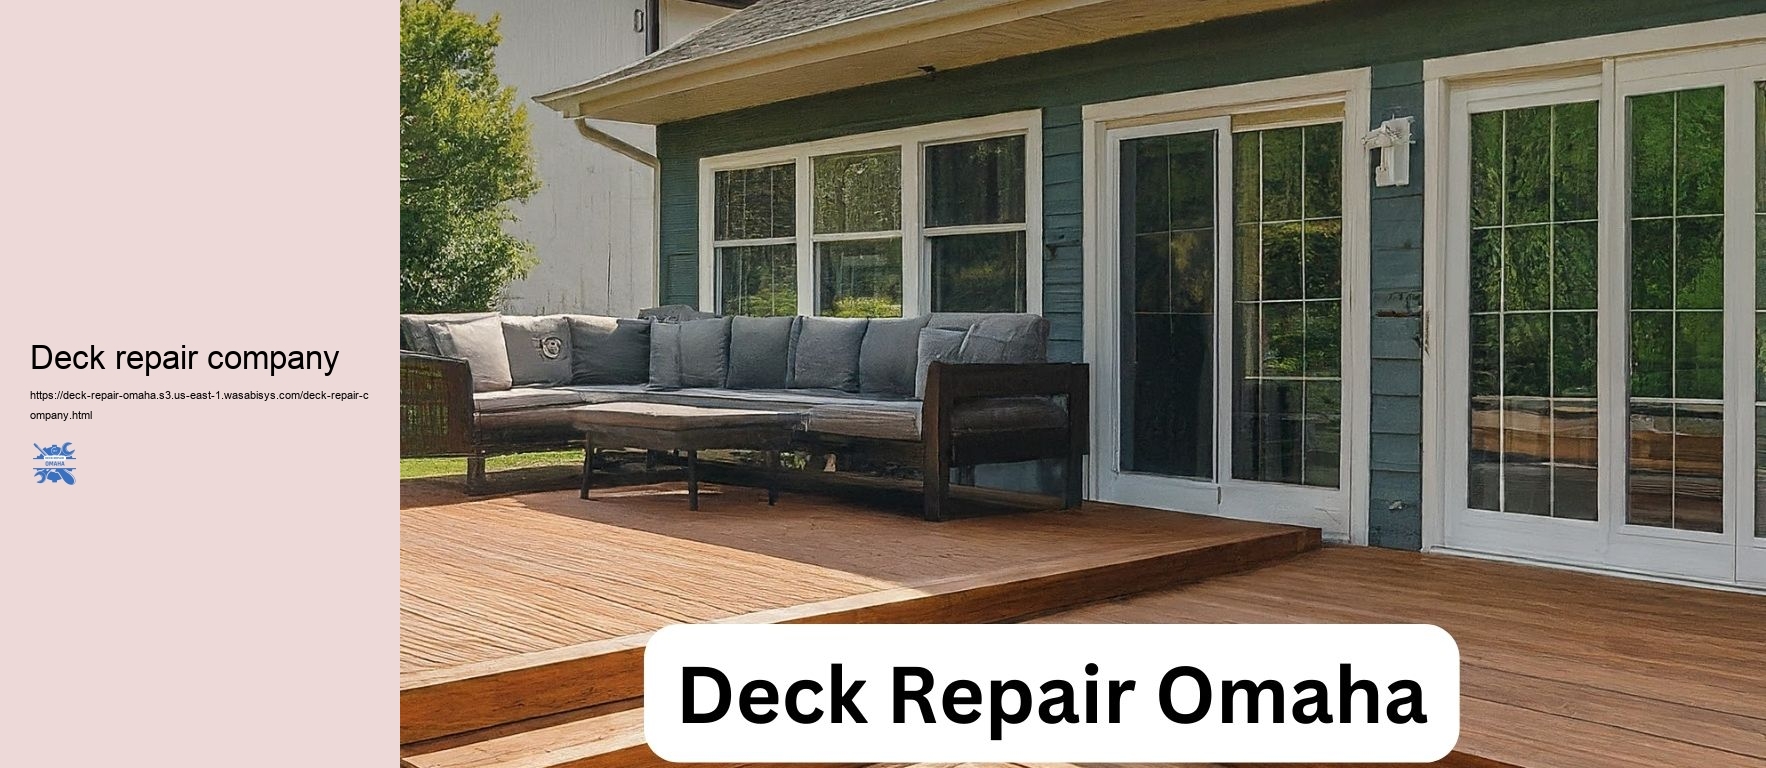 Deck repair company